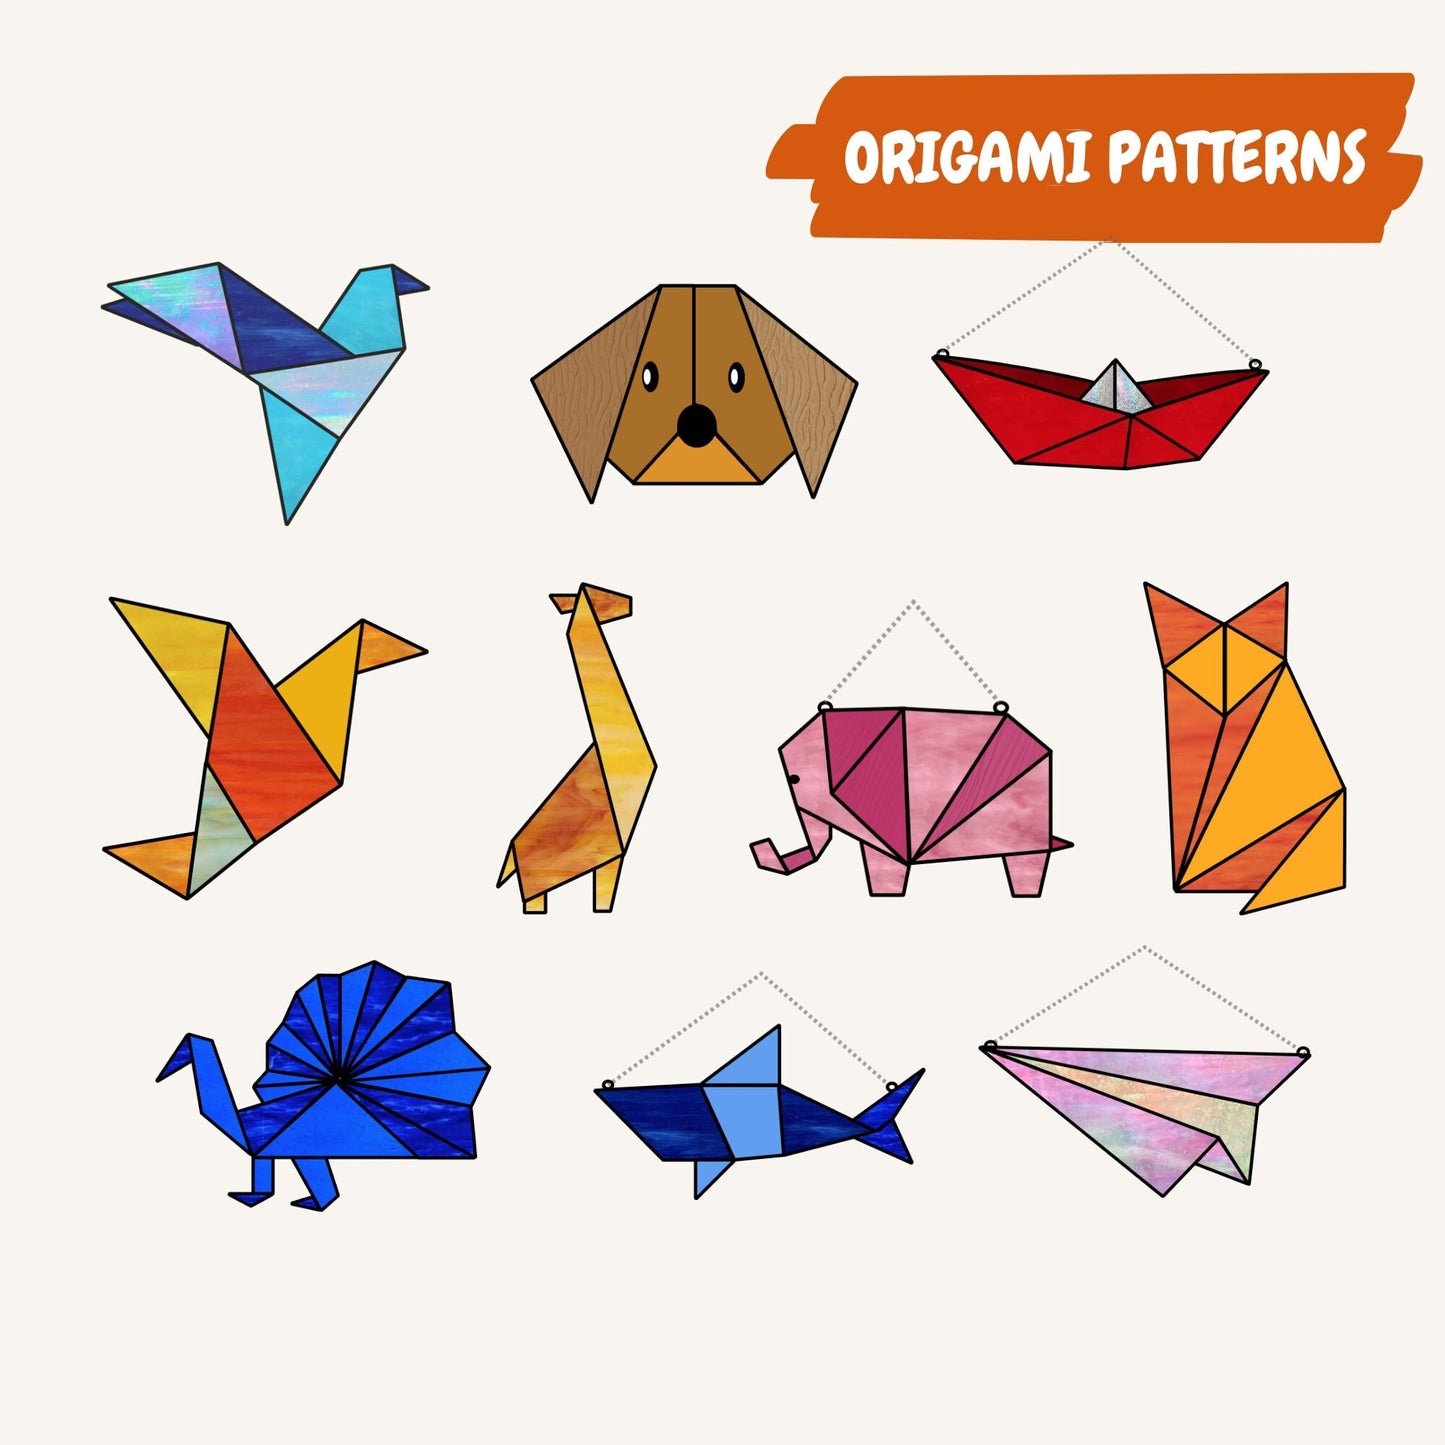 Megapaquete de patrones de origami de vidrieras • Paquete de diez patrones de origami